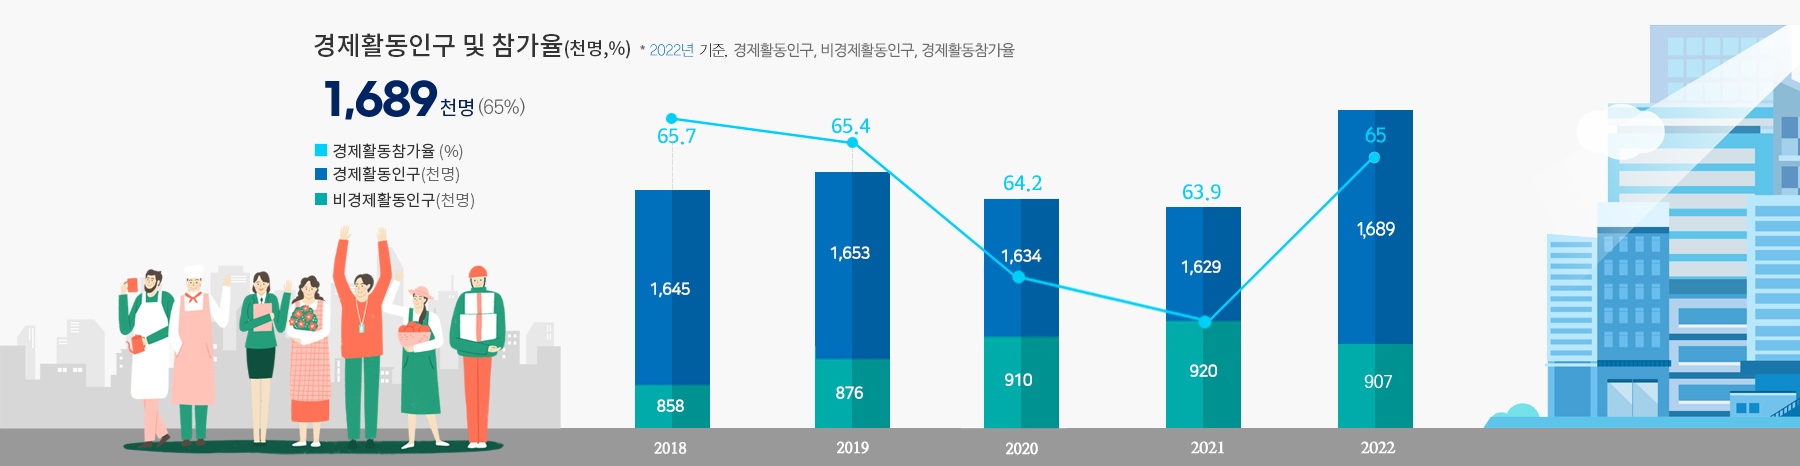 인천광역시 경제활동인구 및 참가율